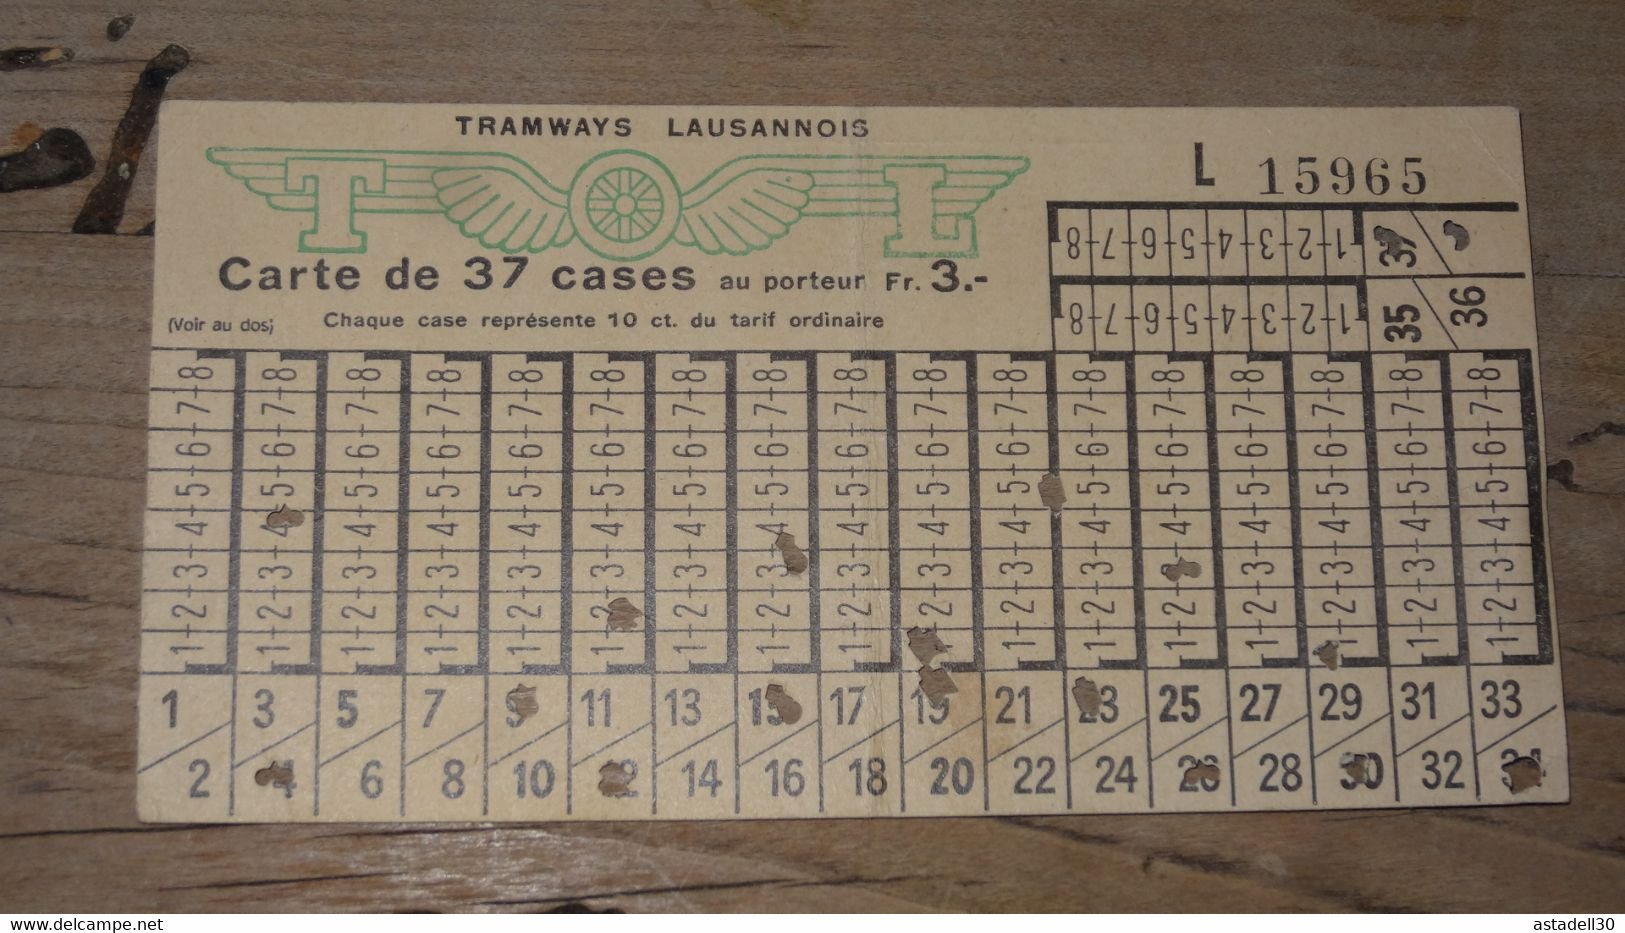 SUISSE - LAUSANNE, Carte De 37 Cases Tramway - 1957 ............. C- ..... E2-110 - Europa